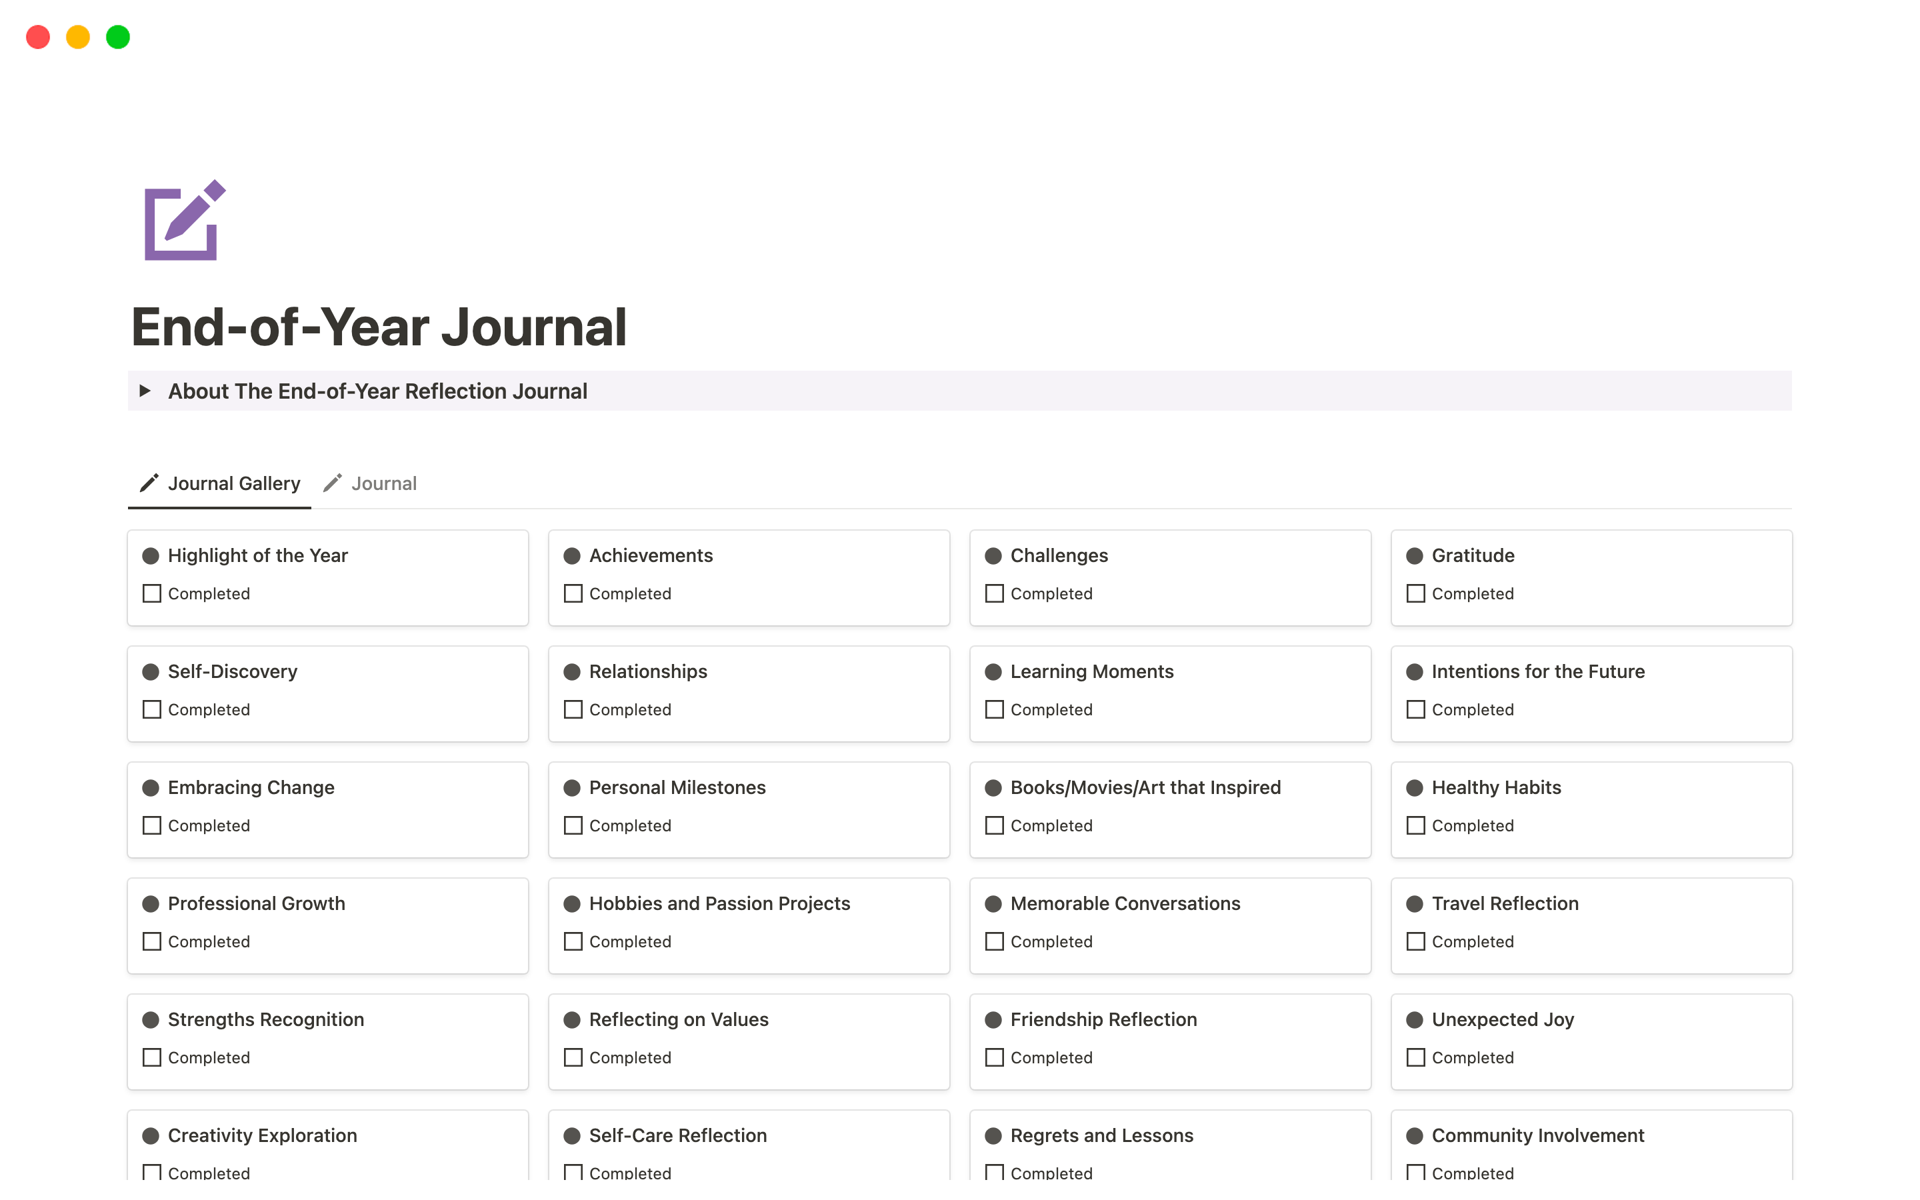 Vista previa de plantilla para End-of-Year Journal